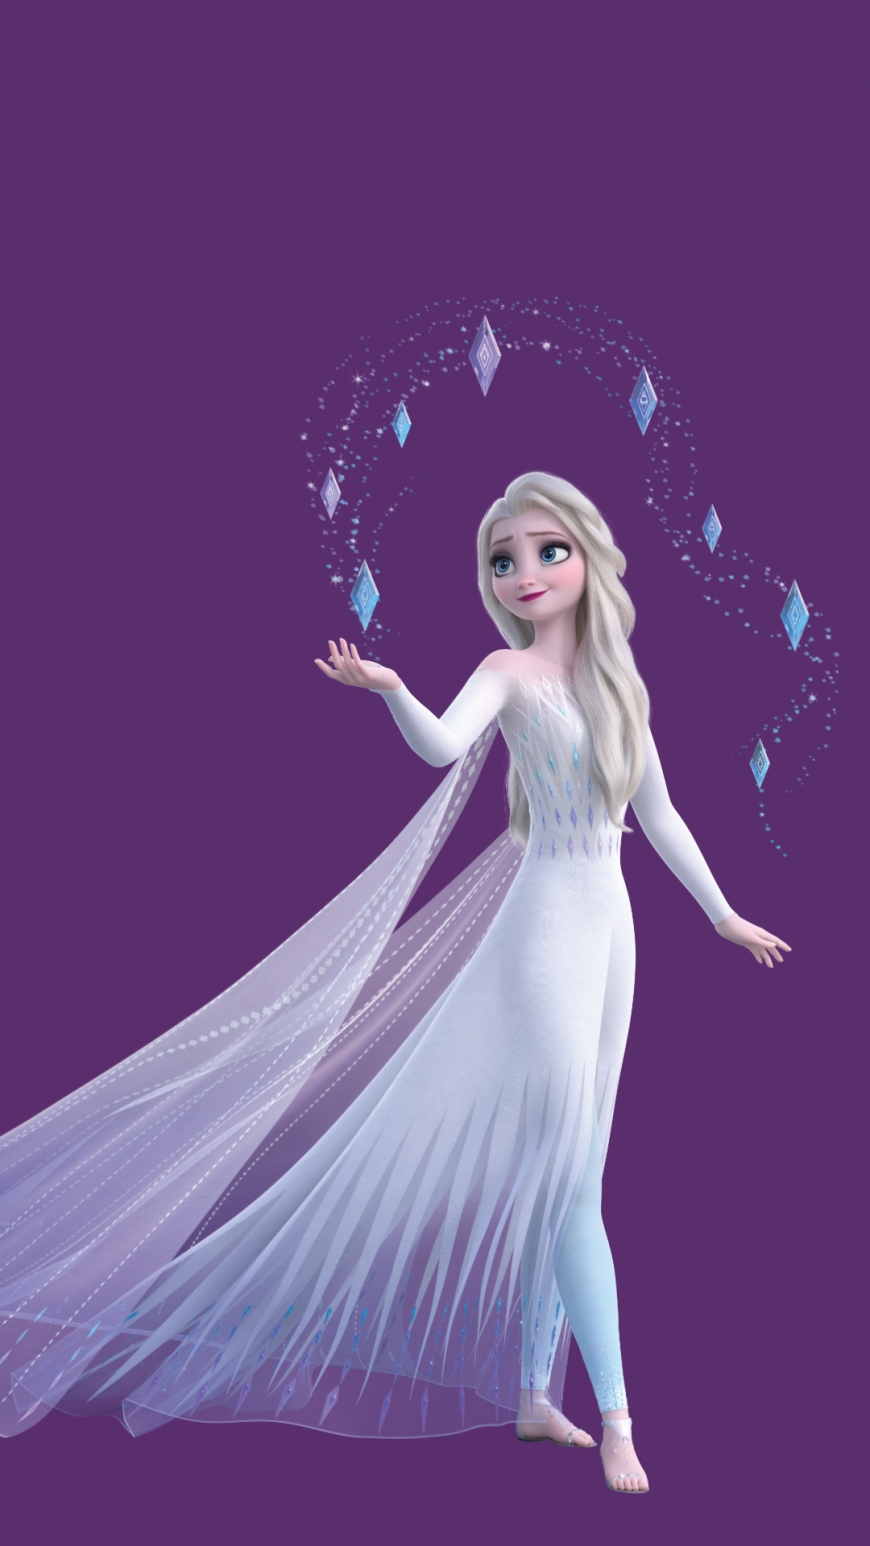 Fagyasztott 2 HD háttérkép Elsa fehér ruha haját lefelé mobil. Wallpaper iphone disney princess, Disney princess elsa, Frozen picture